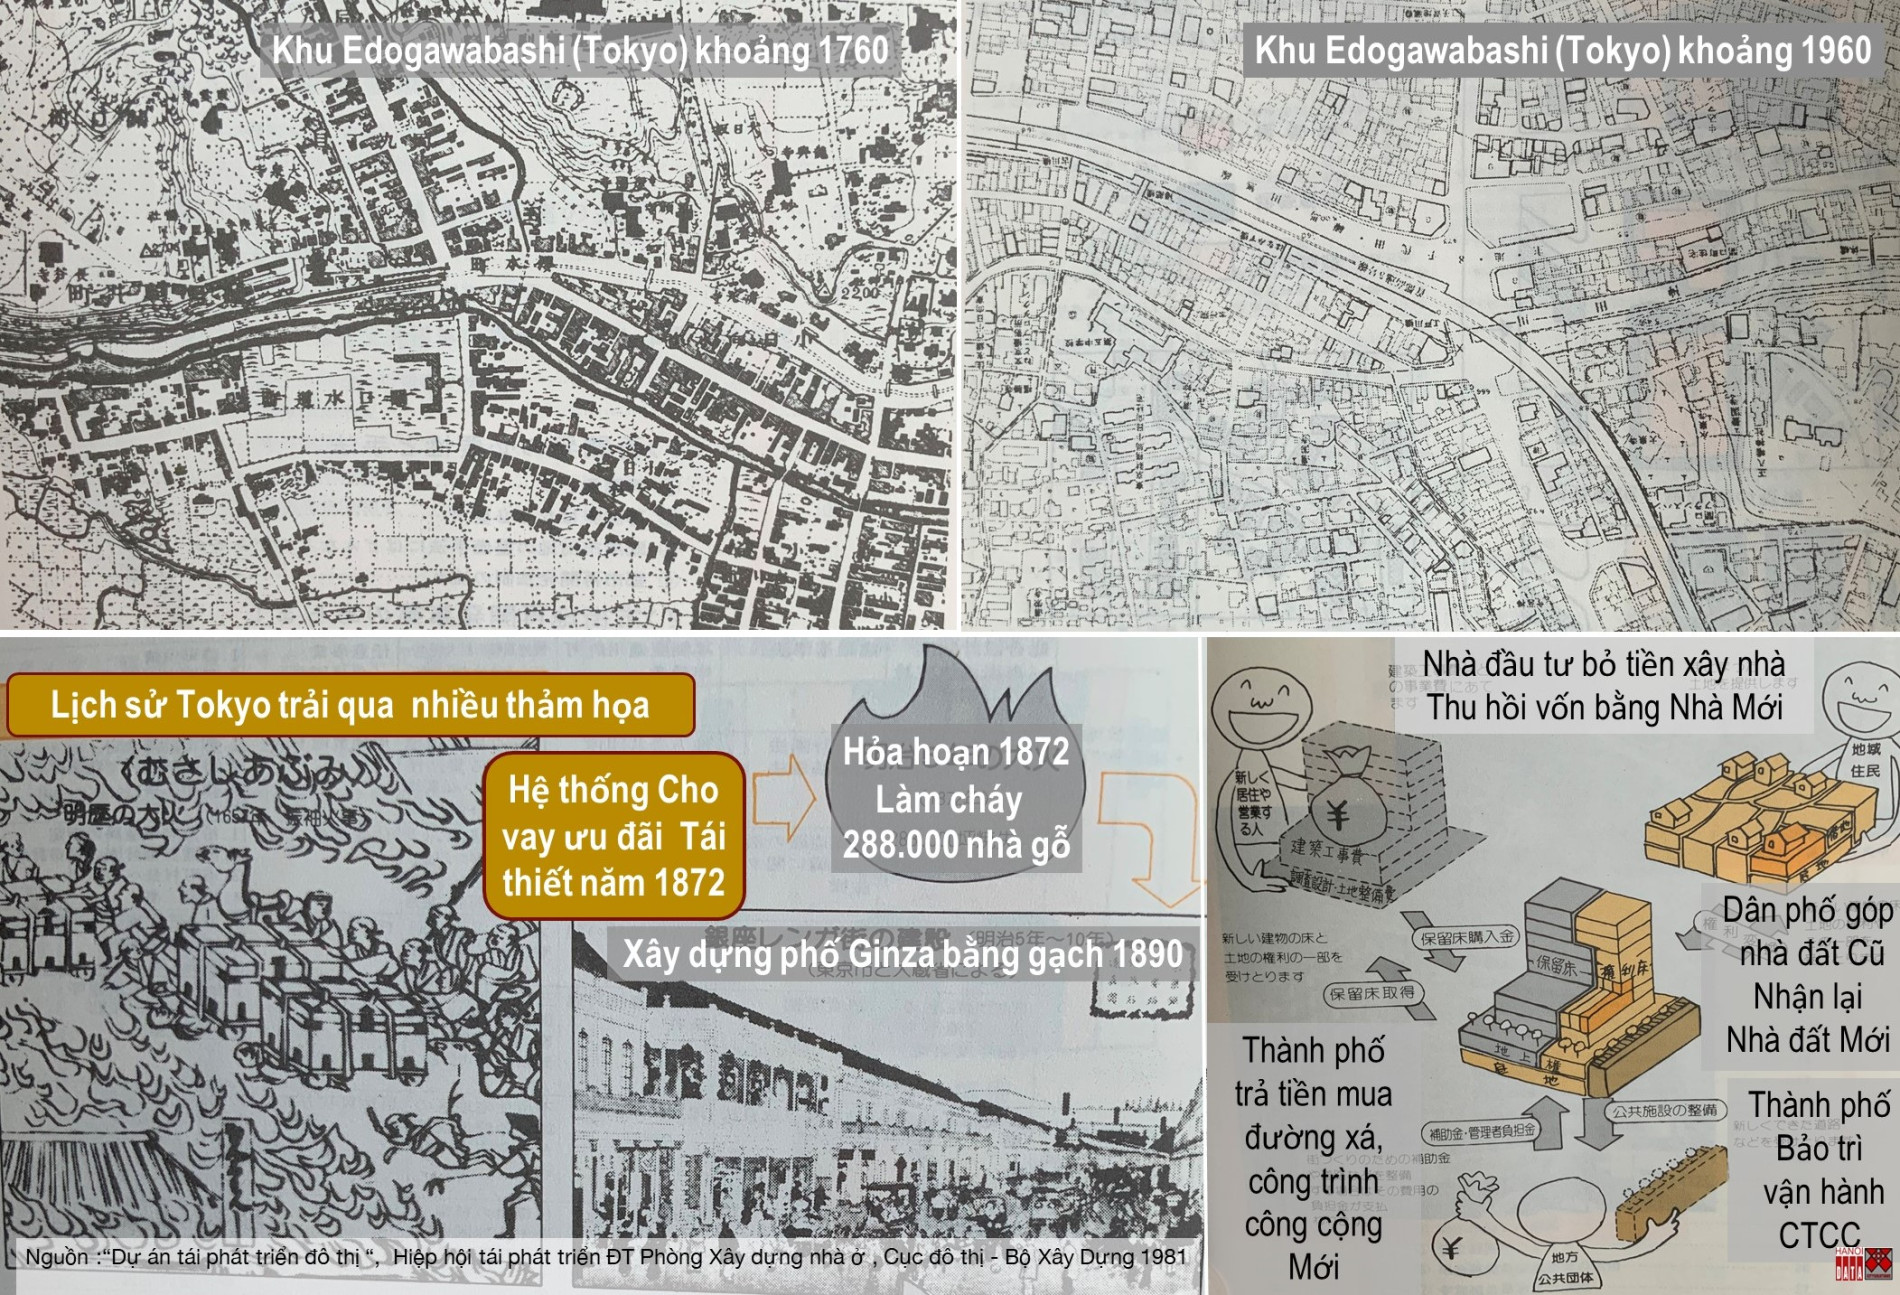 Góp ý “Điều chỉnh Quy hoạch chung xây dựng Thủ đô đến năm 2030 và tầm nhìn đến năm 2050” – Bài 11: Muốn khai thác đất đai theo định hướng TOD, Luật Đất Đai phải đi trước một bước - Tạp chí Kiến trúc Việt Nam